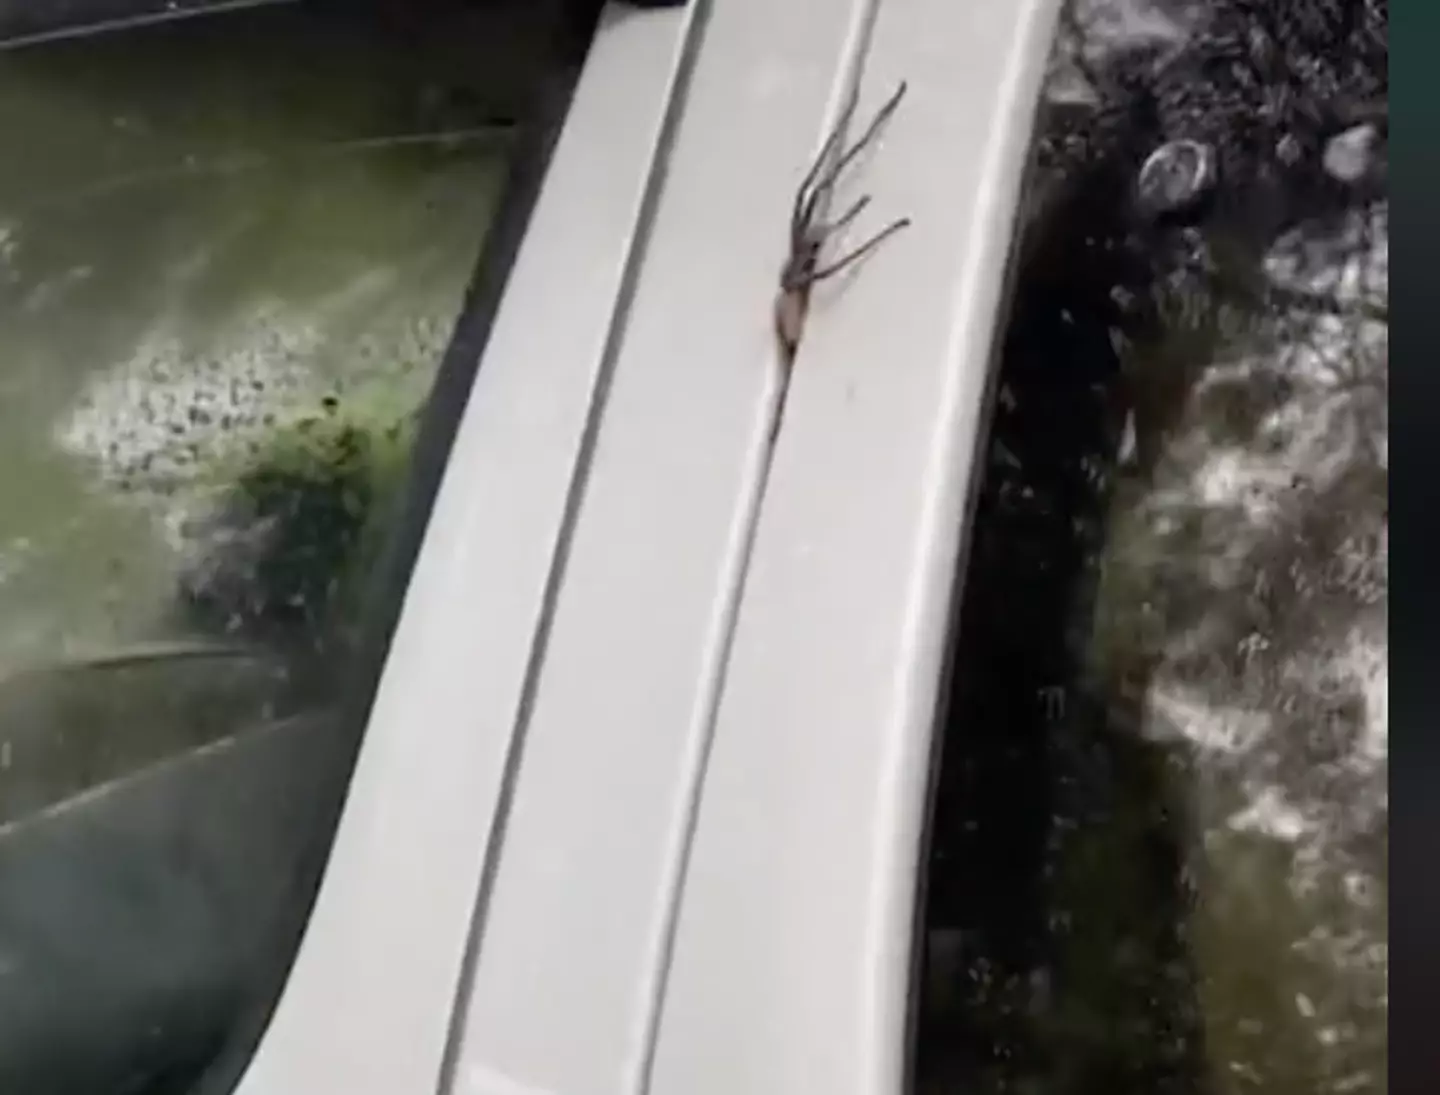 A huntsman spider climbs into a van.